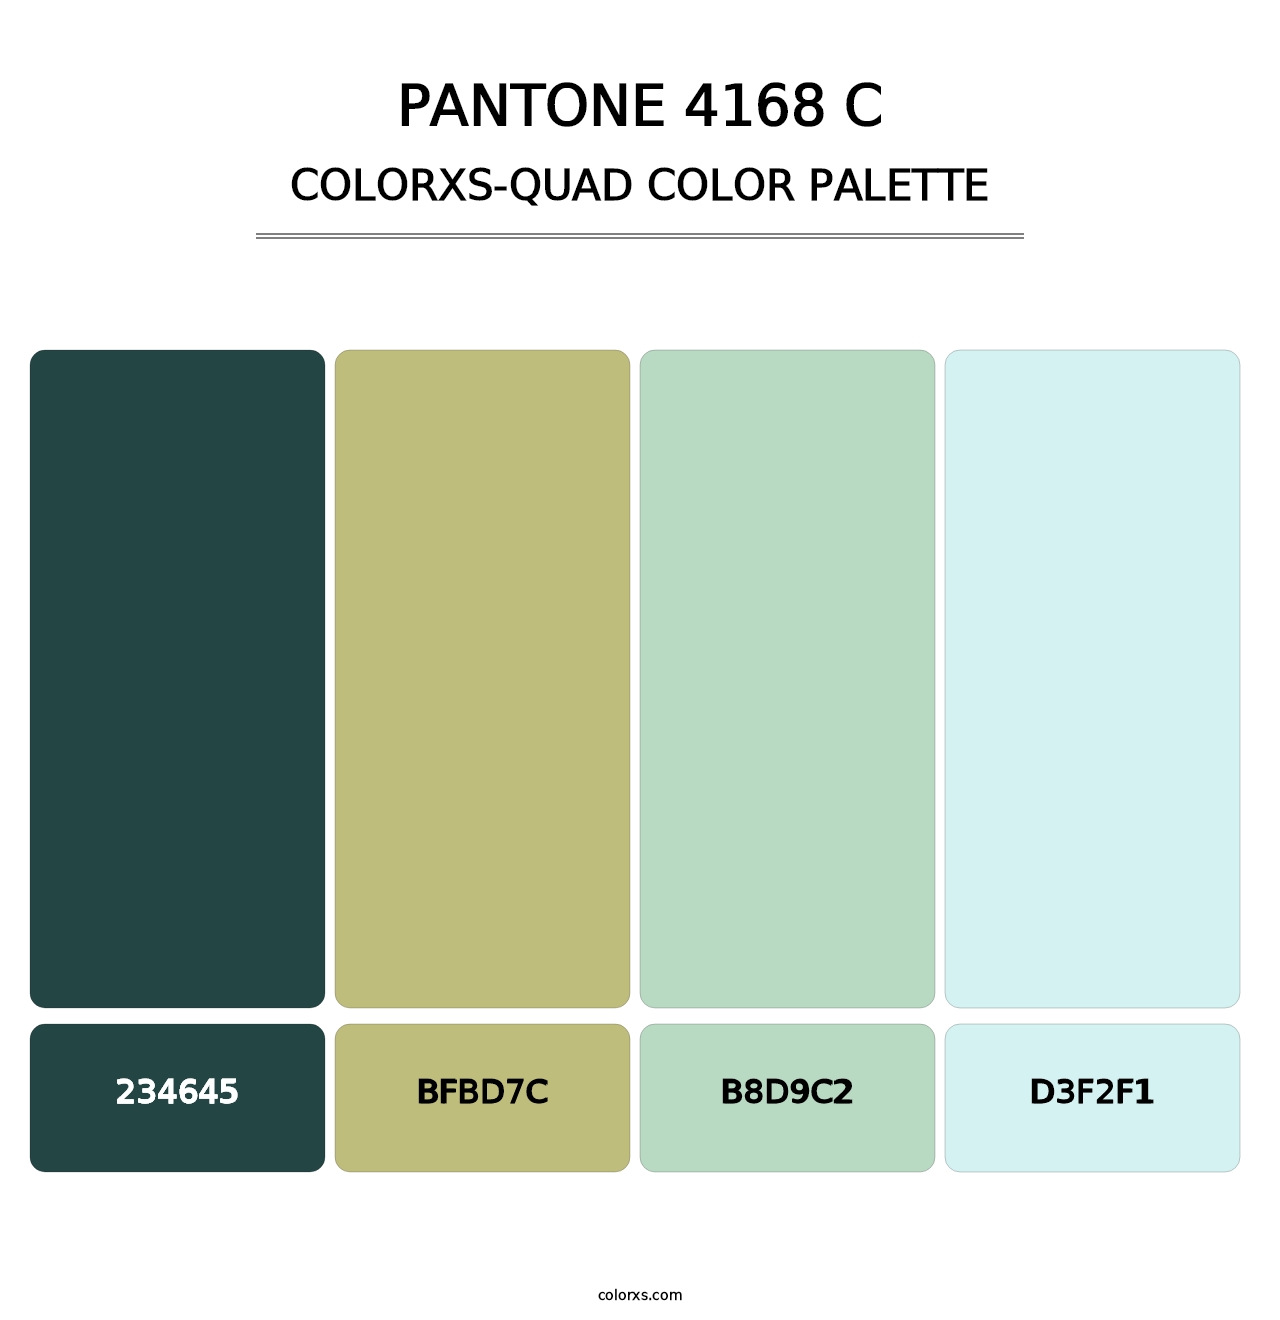 PANTONE 4168 C - Colorxs Quad Palette